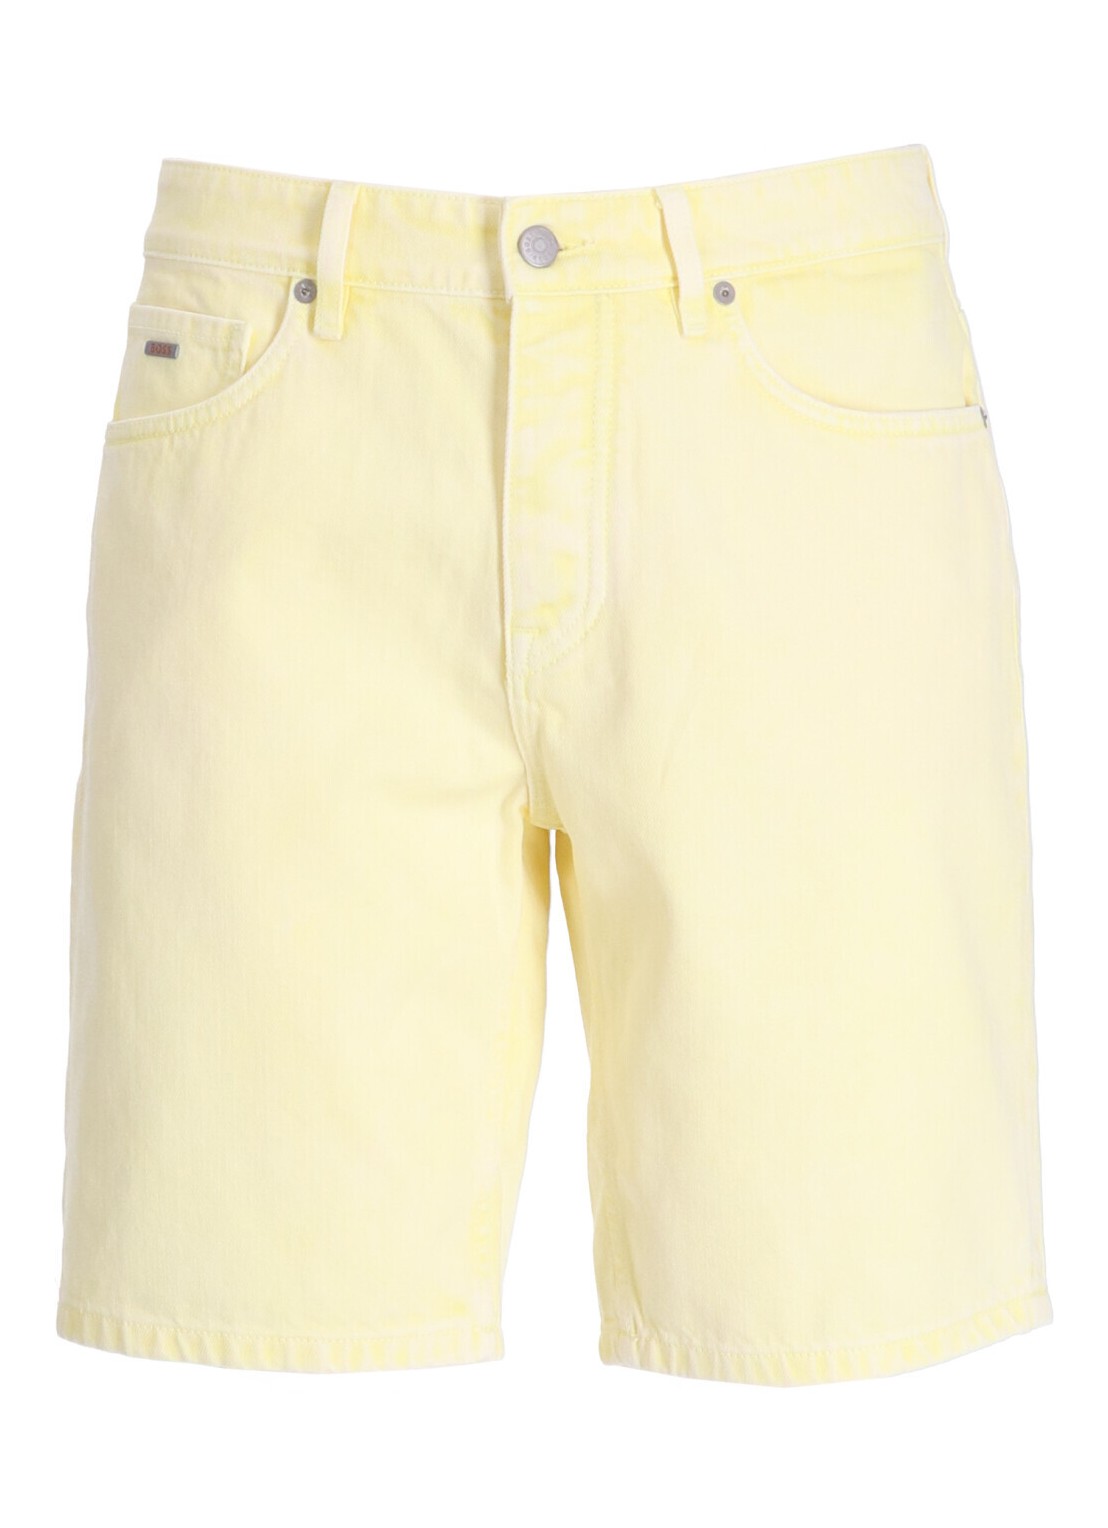 Pantalon corto boss short pant mananderson shorts bc - 50514494 737 talla 33
 